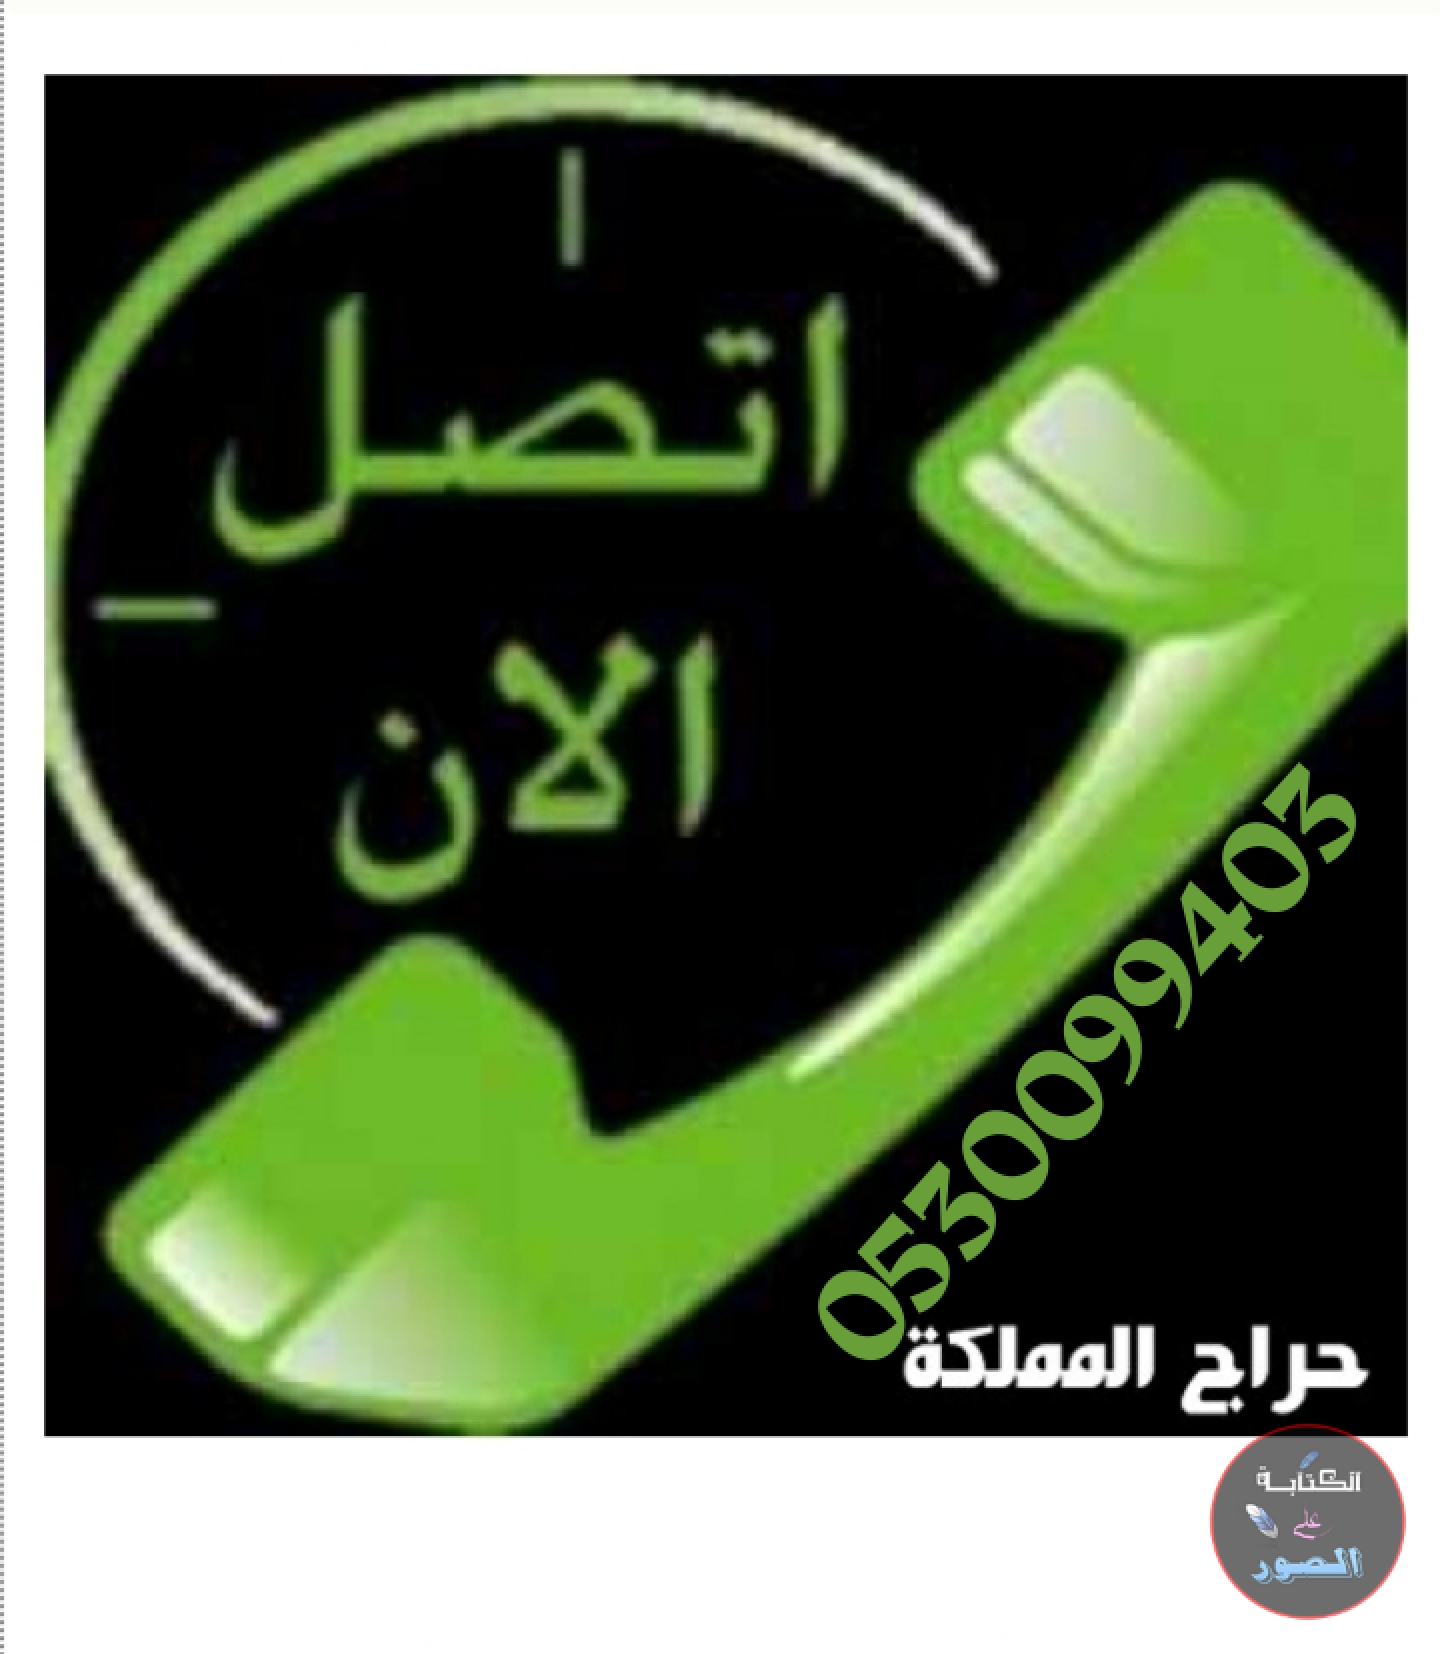 شراء مكيفات مستعمله الرياض حي الشفا 0530099403